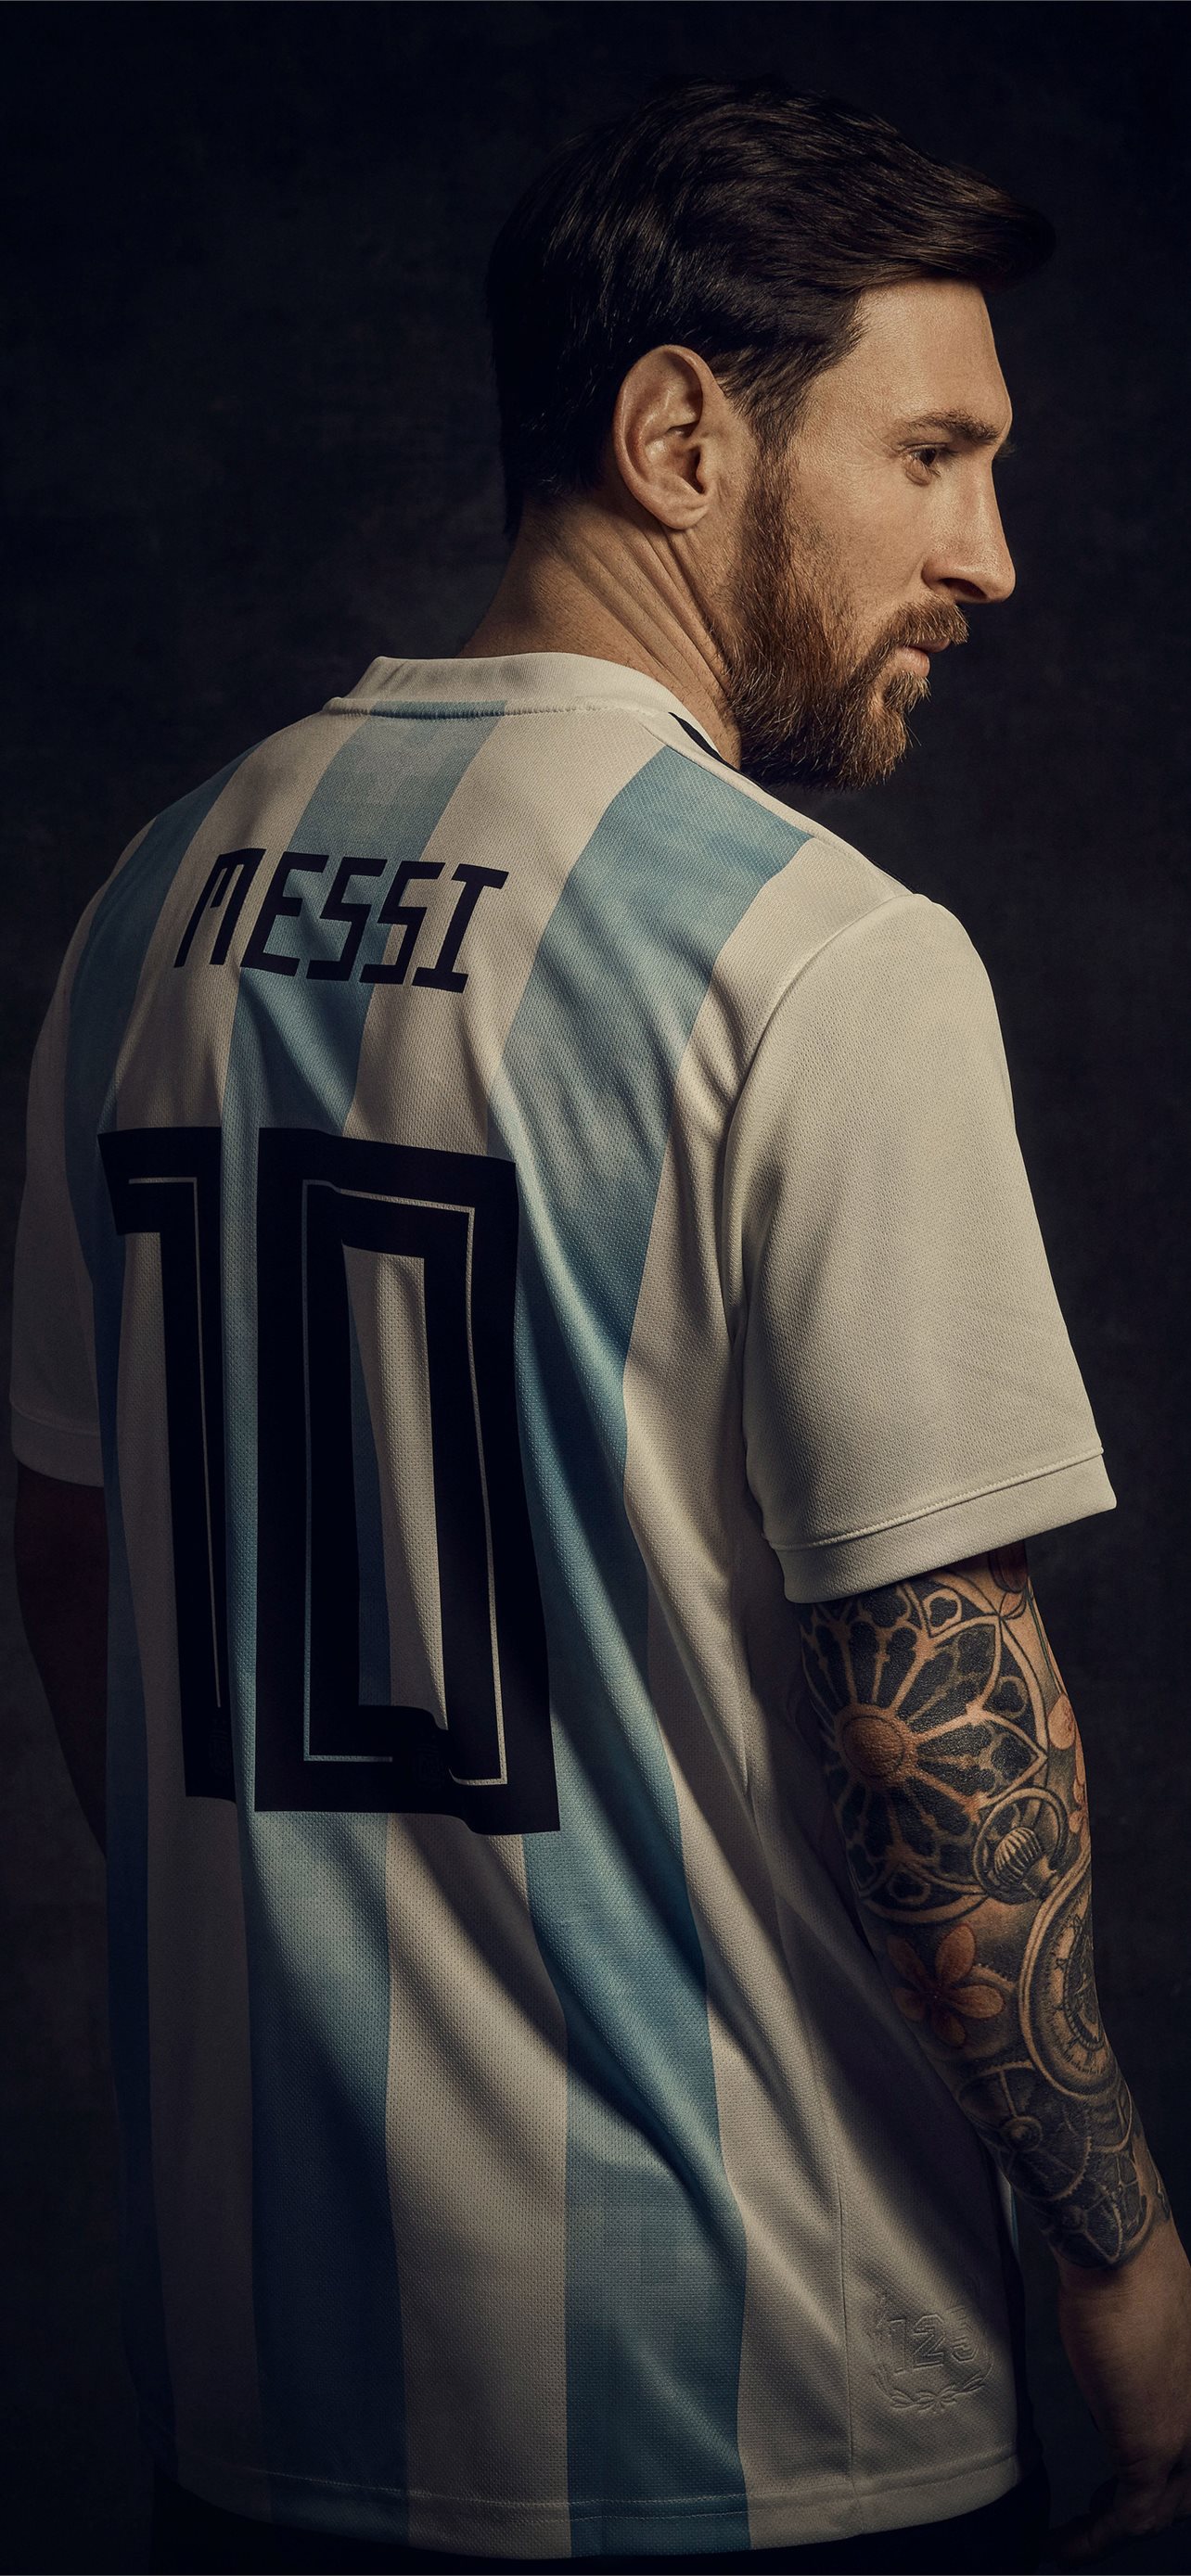 Chiêm ngưỡng những bức ảnh nền chất lượng cao Messi iPhone HD wallpapers sẽ khiến cho người xem cảm thấy ngỡ ngàng trước vẻ đẹp của siêu sao đá bóng Lionel Messi. Hãy để những hình nền tuyệt đẹp này trở thành bộ sưu tập đáng yêu của riêng bạn.